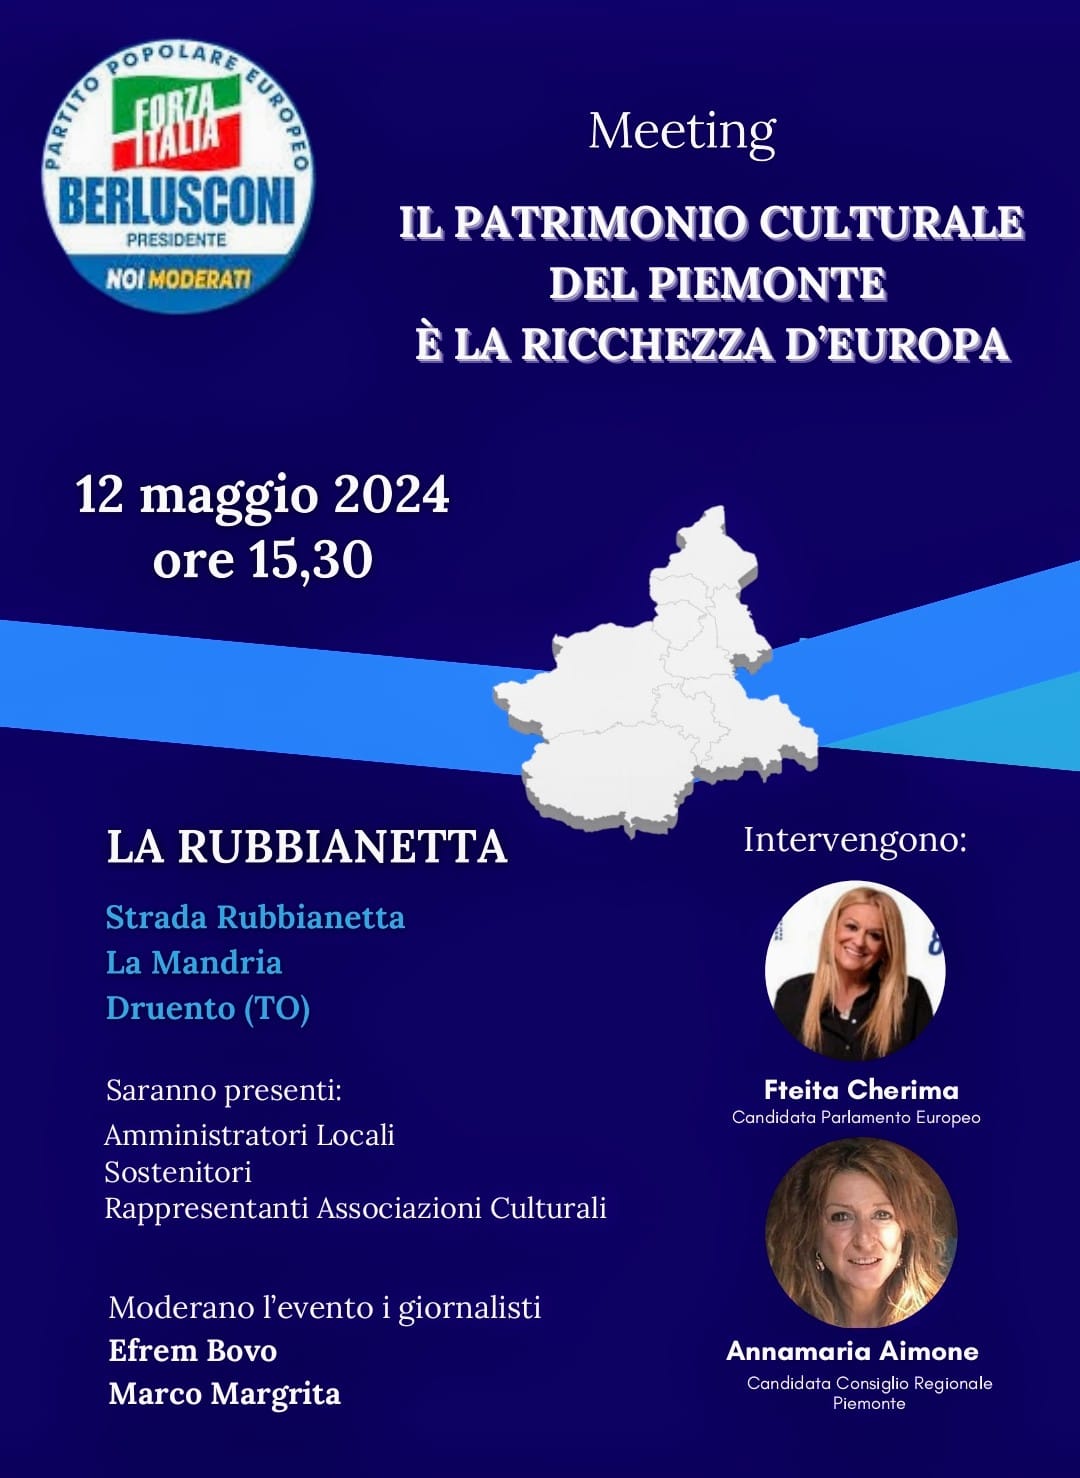 “Il Patrimonio culturale del Piemonte è la ricchezza d’Europa”